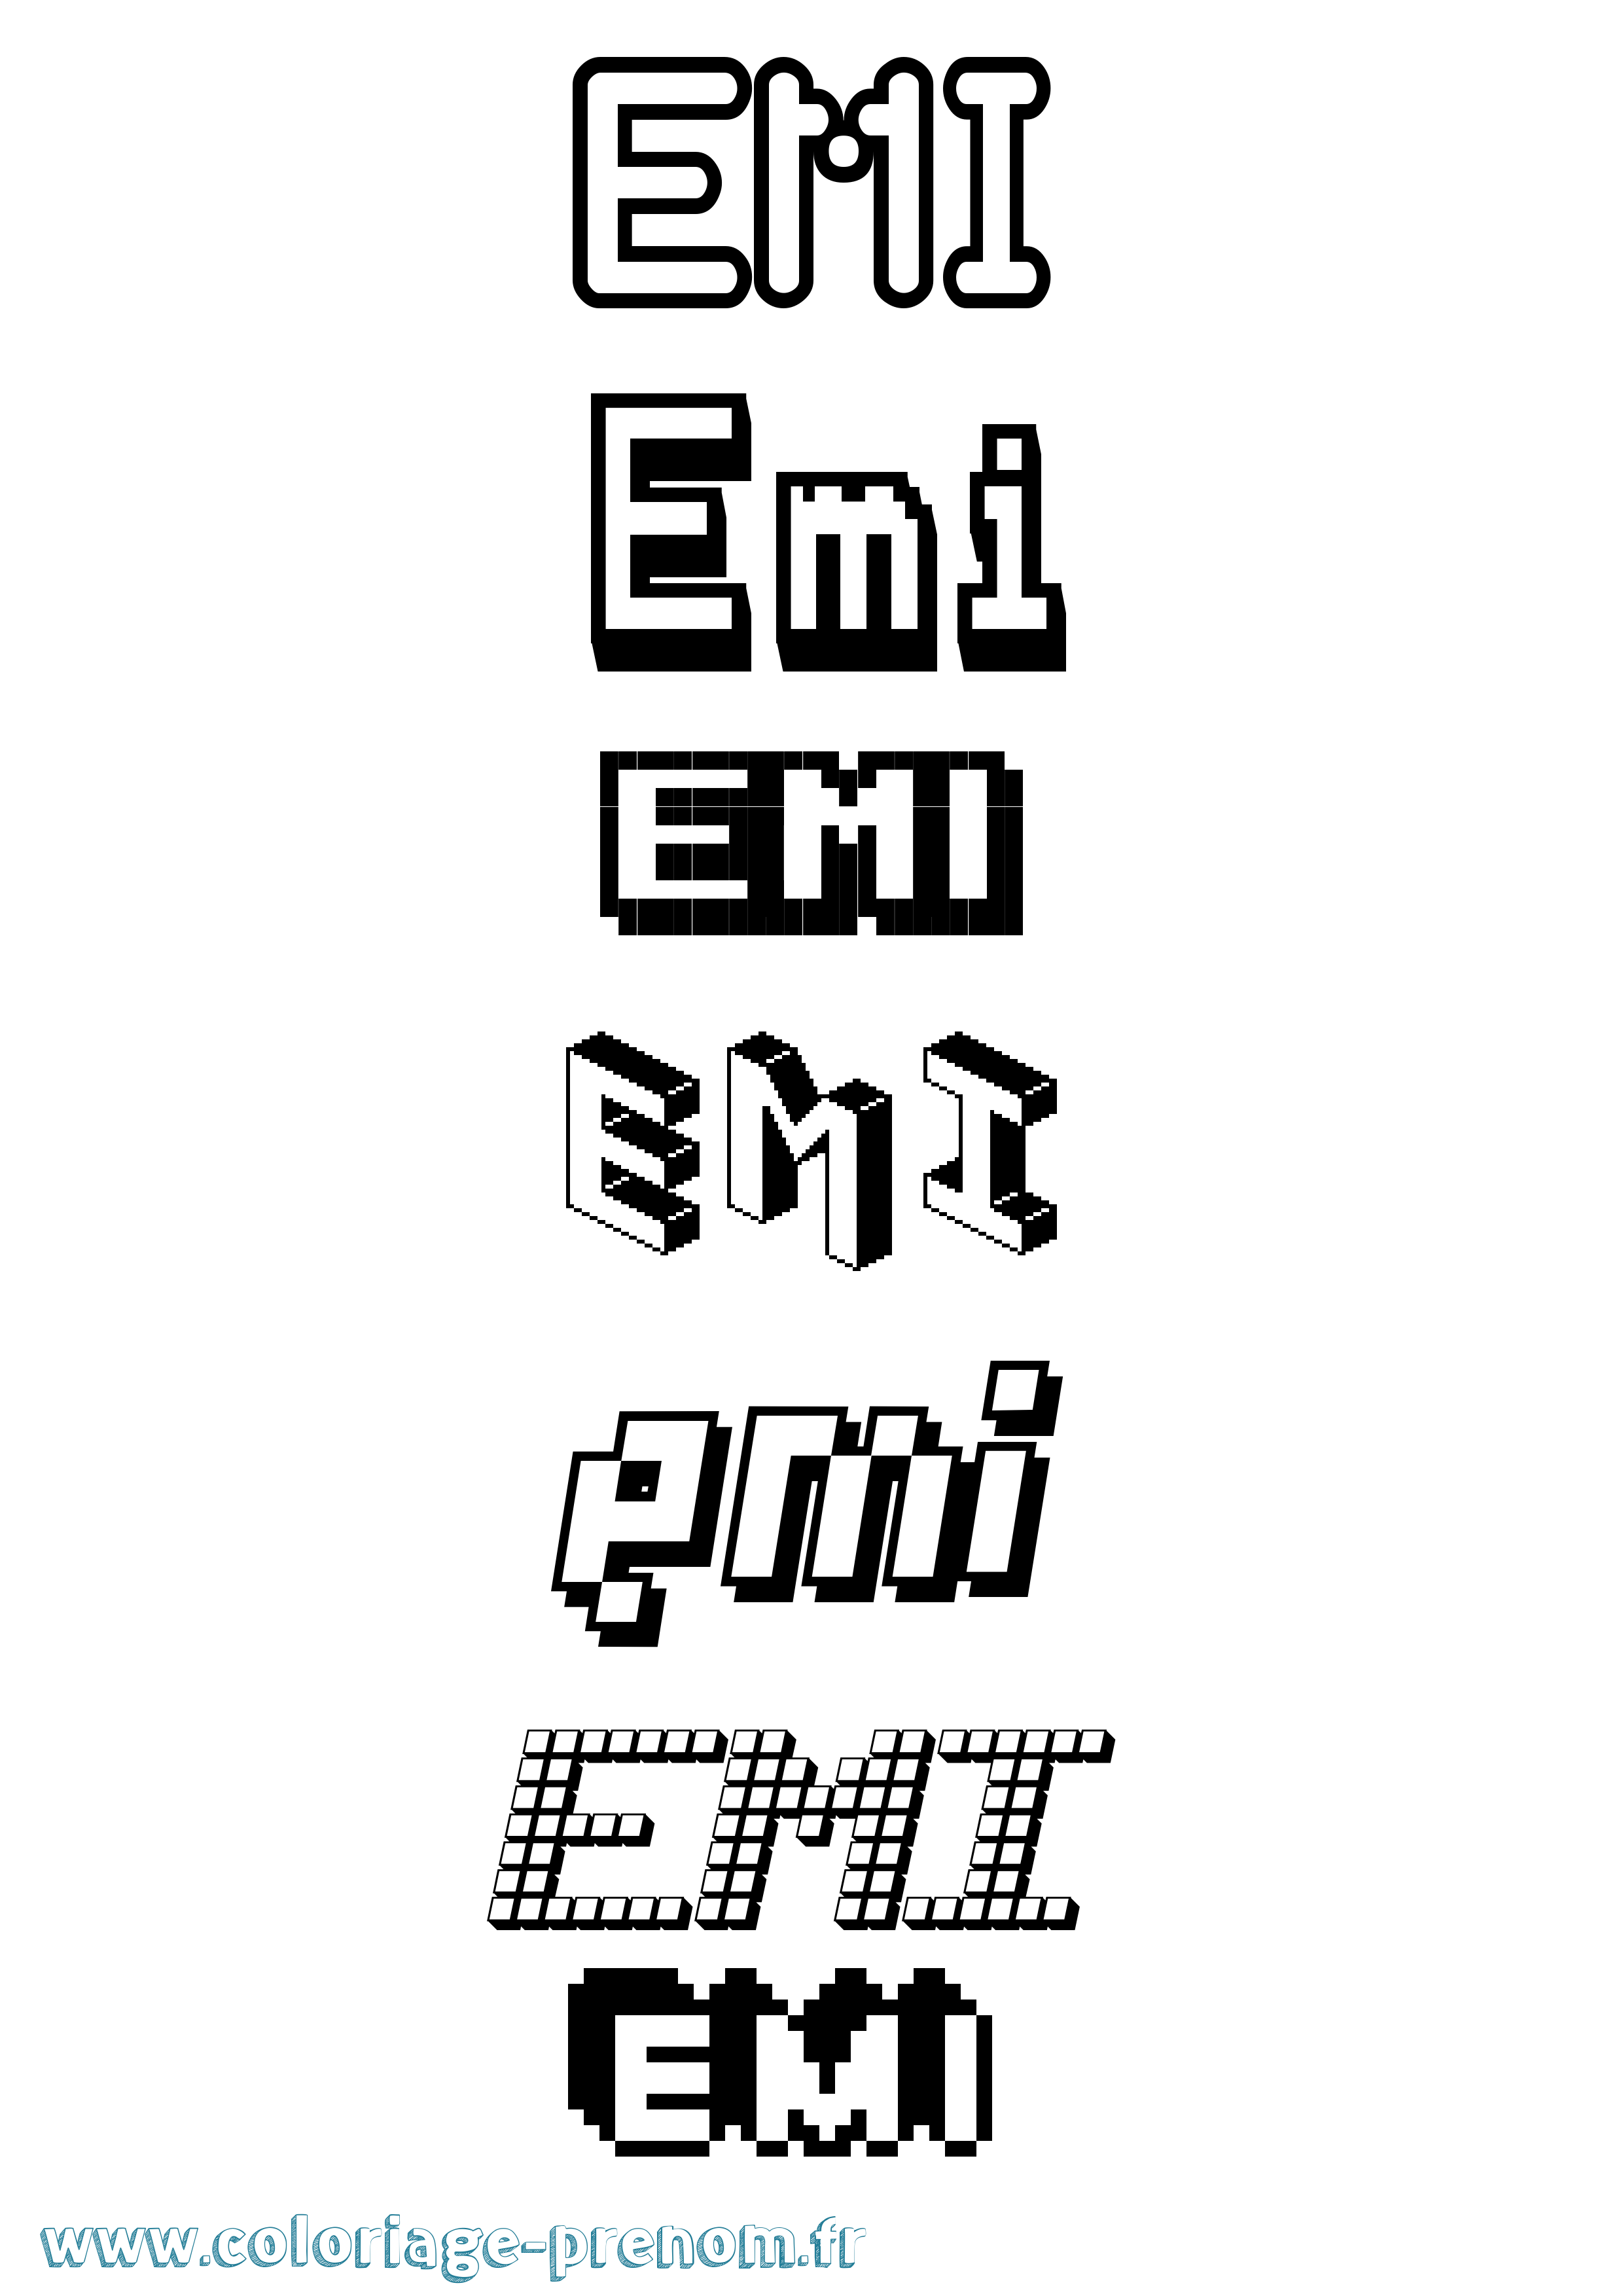 Coloriage prénom Emi Pixel